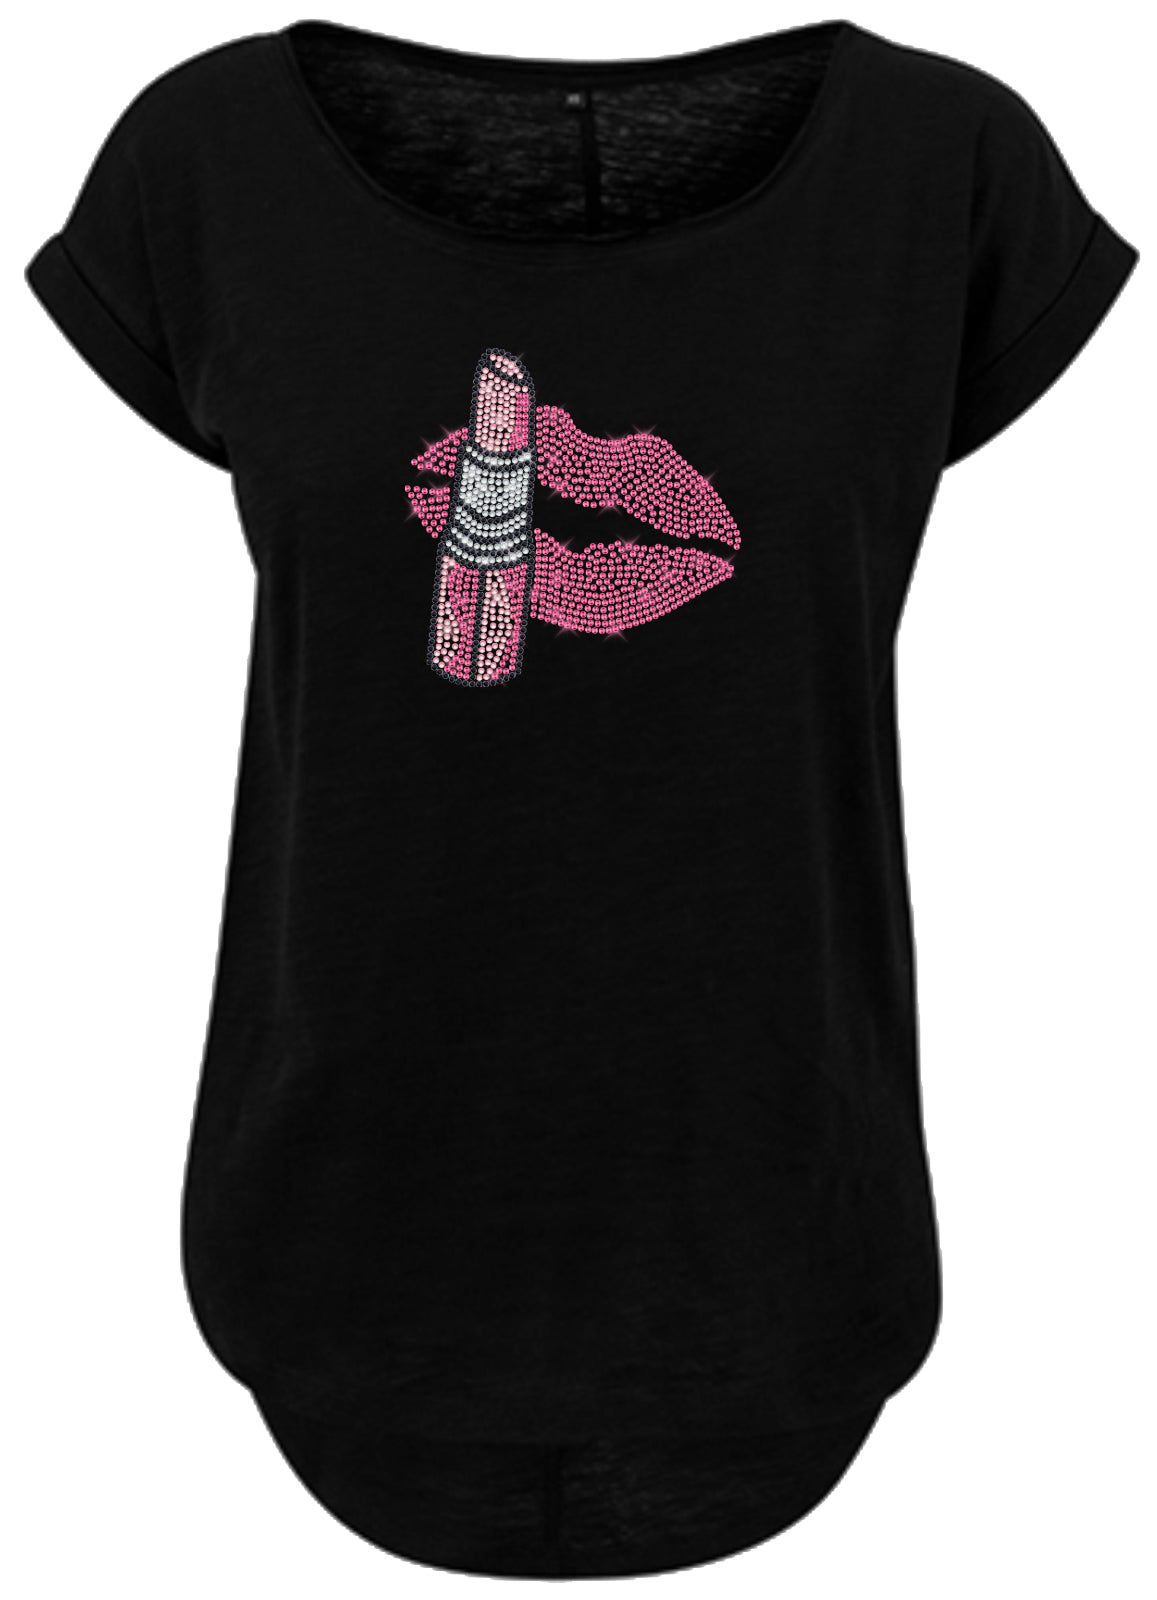 Blingeling®Shirts Damen T-Shirt   Kussmund mit Lippenstift Pink